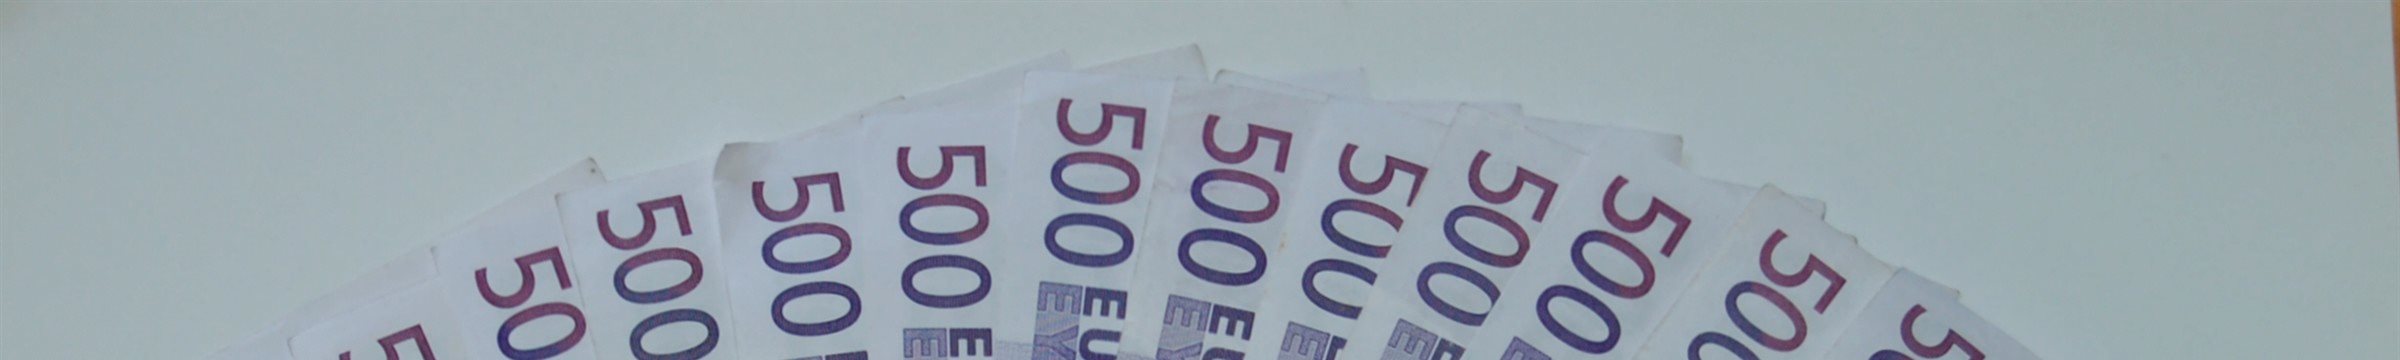 Европа: пора прятать денежки в сундук